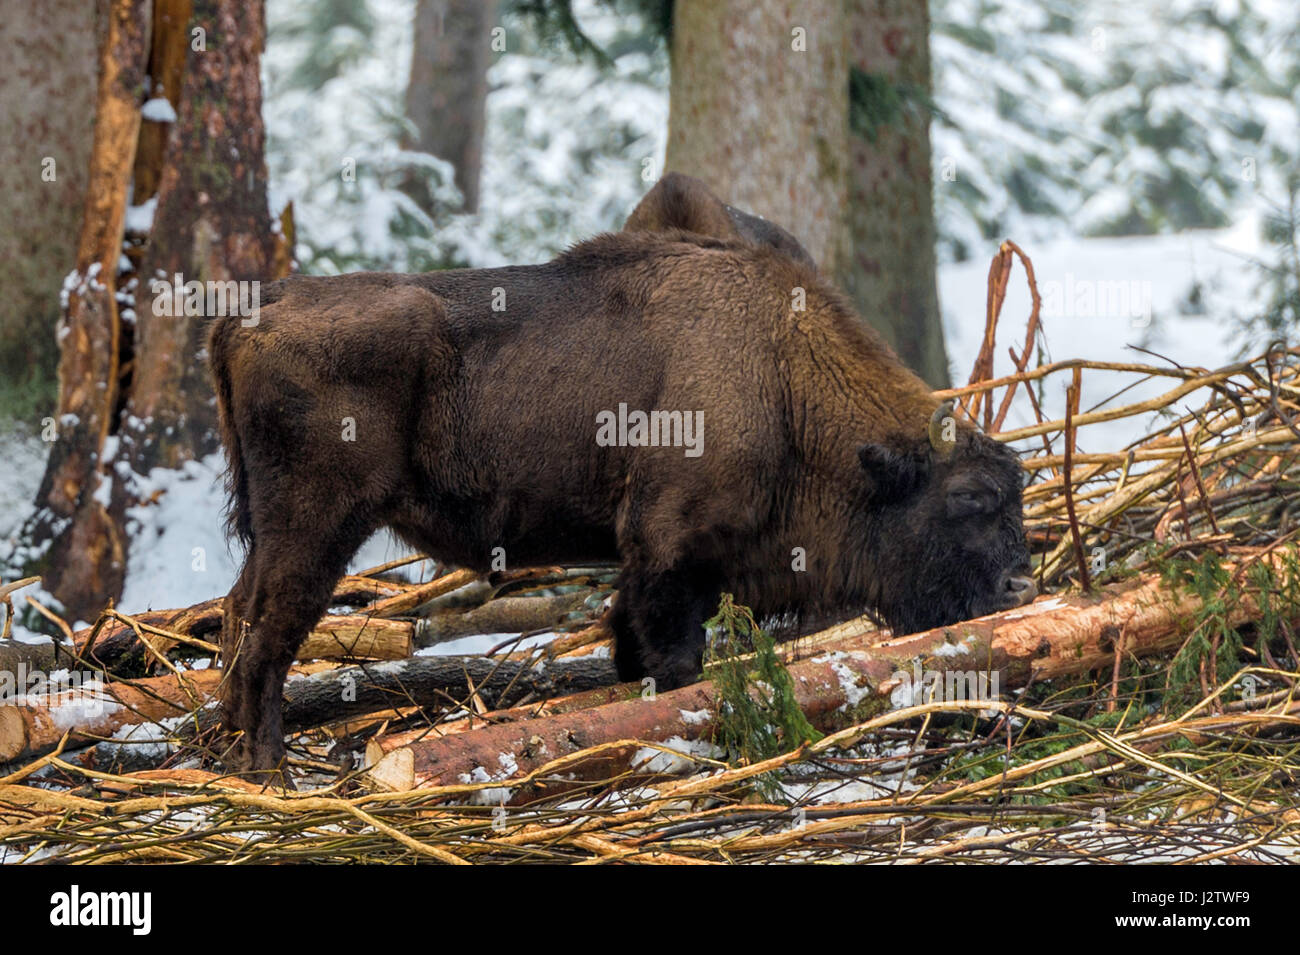 Solo adulto de madera europea el bisonte (Bison bonasus) representada en bosques cubiertos de nieve en pleno invierno. Foto de stock